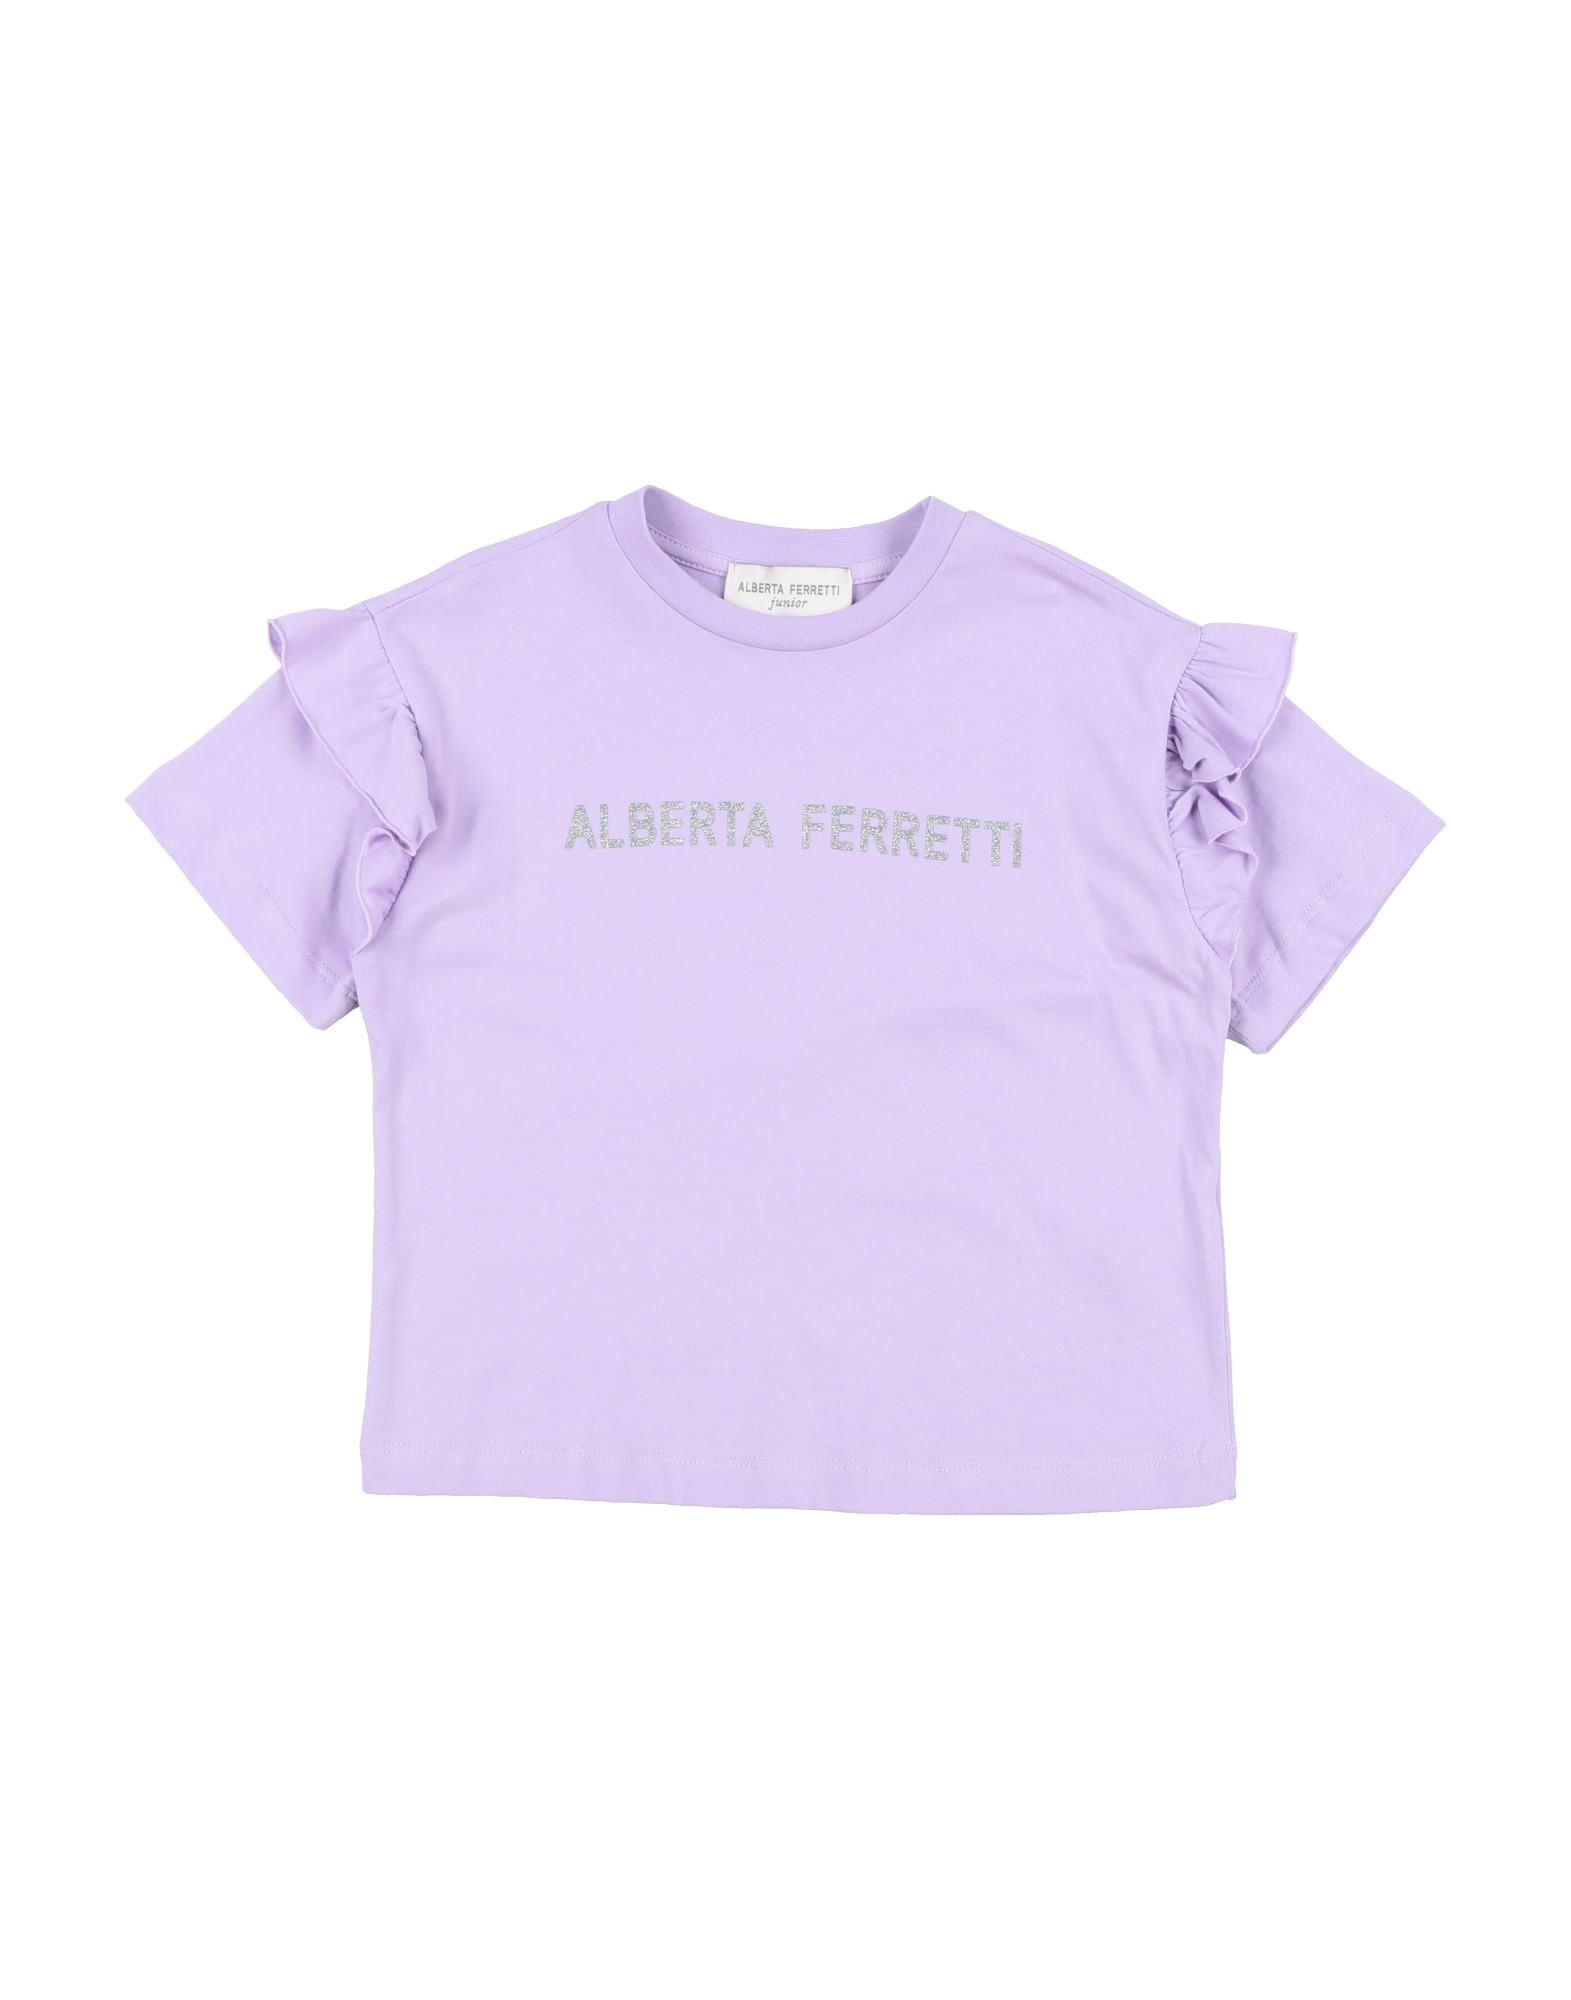 Alberta Ferretti Kids' T-shirts In Lilac